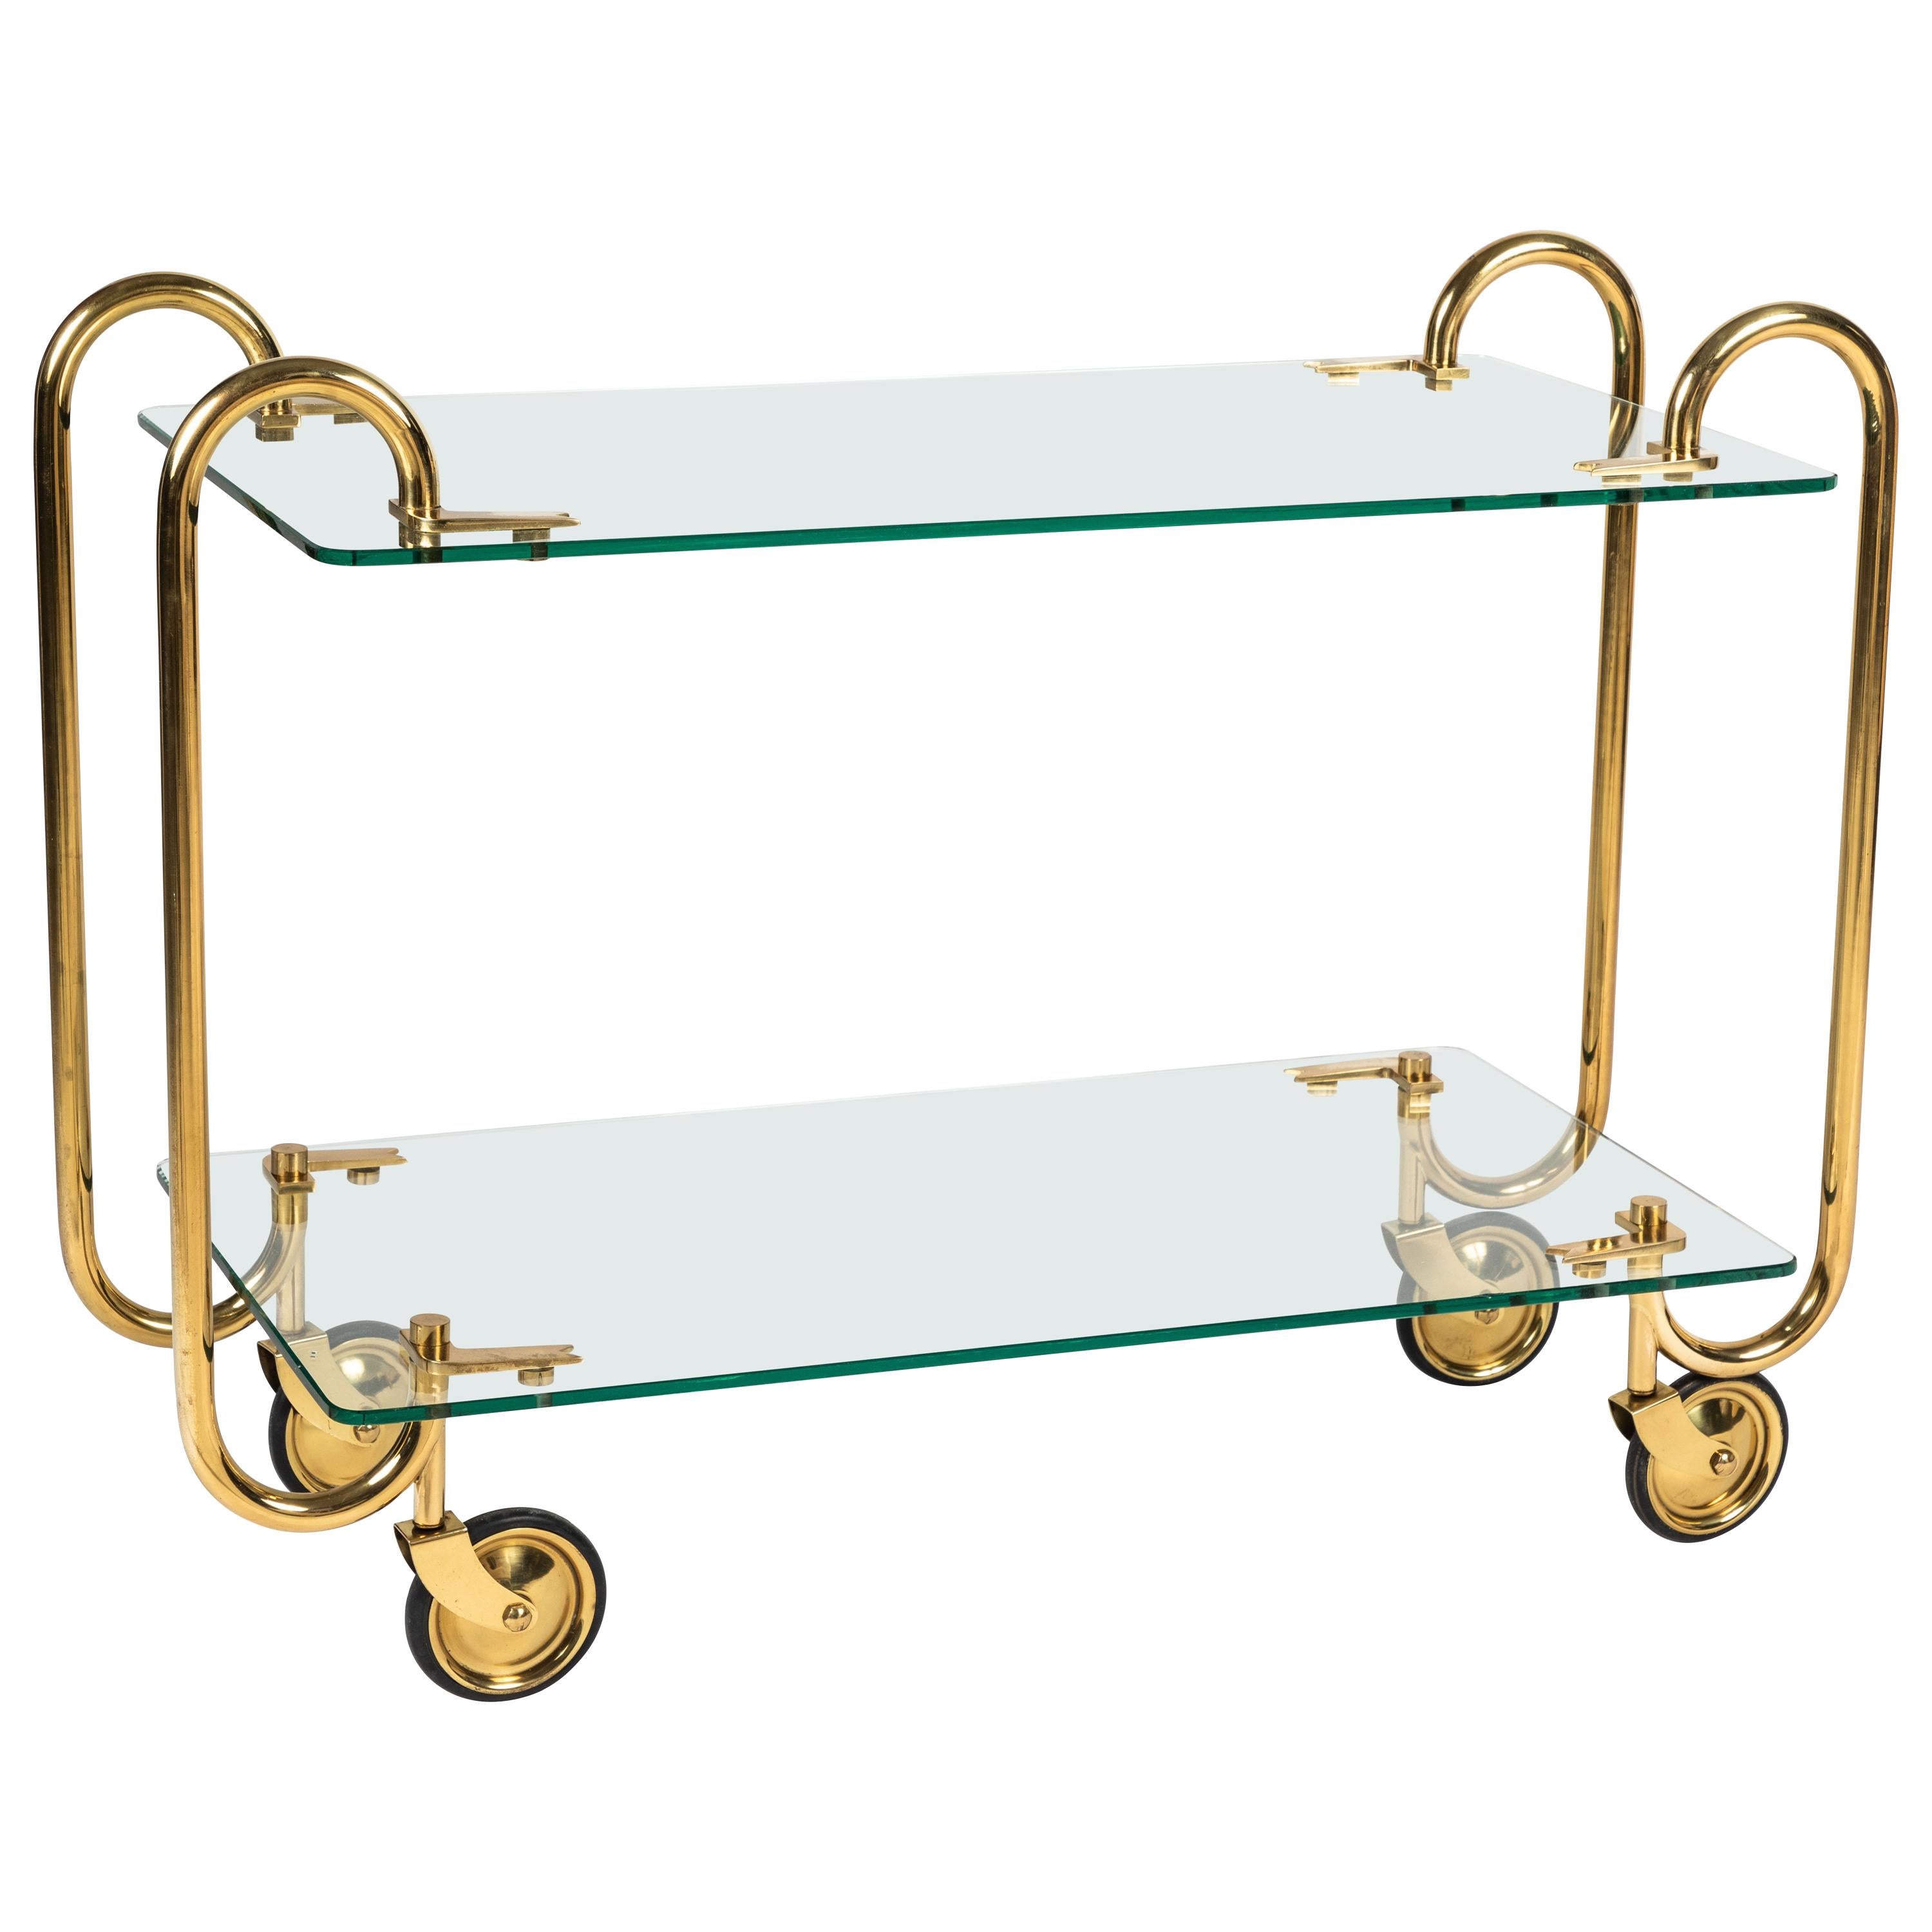 Brass and Glass Drinks Trolley by Fontana Arte